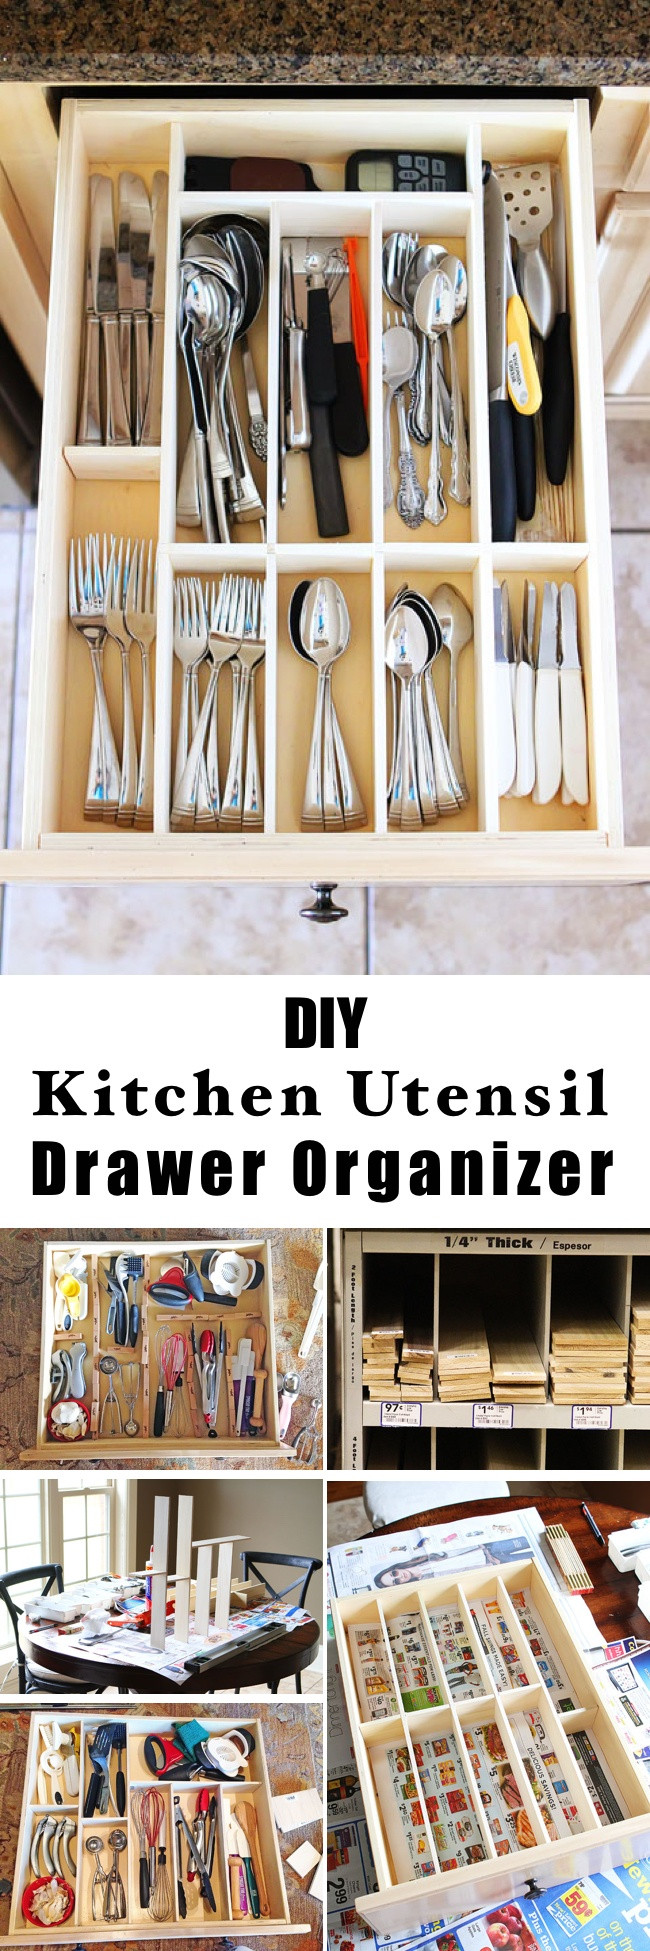 DIY Kitchen Utensil Organizer
 15 Innovative DIY Kitchen Organization & Storage Ideas